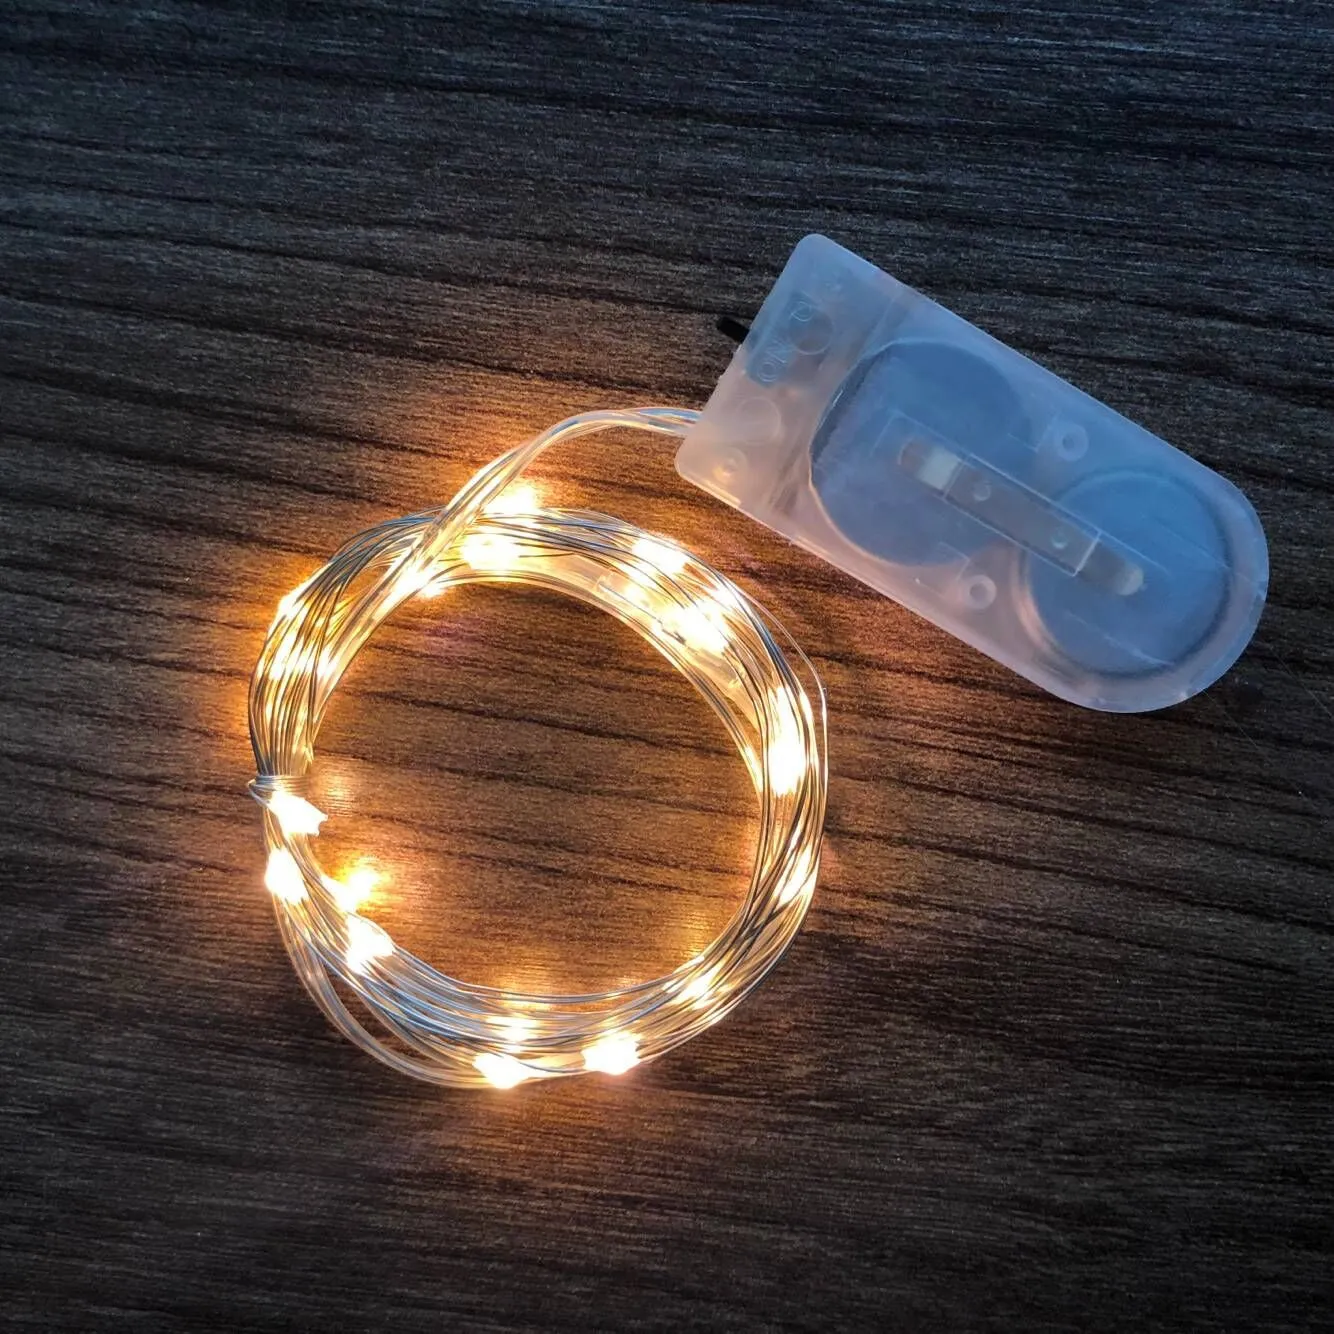 Lumière LED Flexible Chaîne Lampe Fil De Cuivre Armoire Lampe Bibliothèque Décoration Fête De Mariage